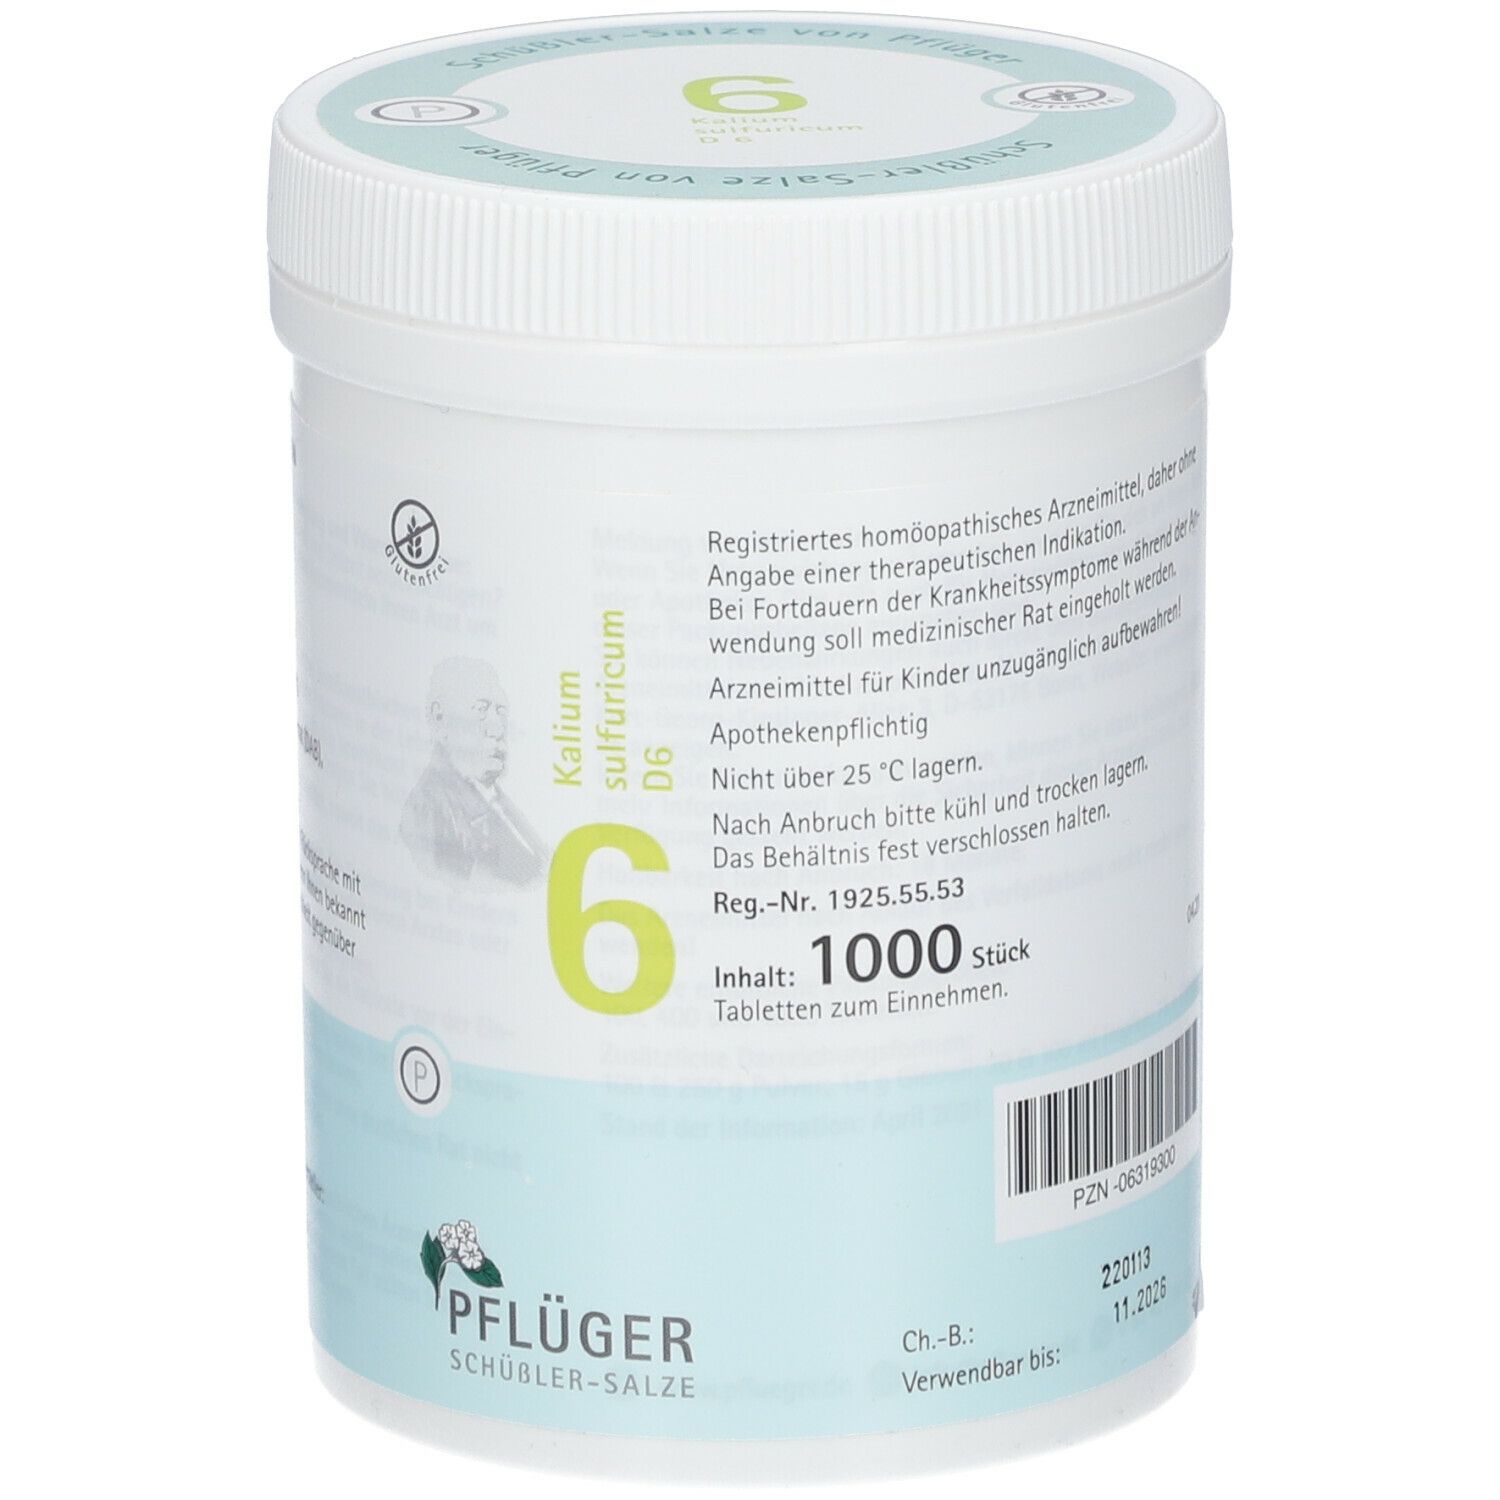 Biochemie Pflüger® Nr. 6 Kalium sulfuricum D6 Tabletten